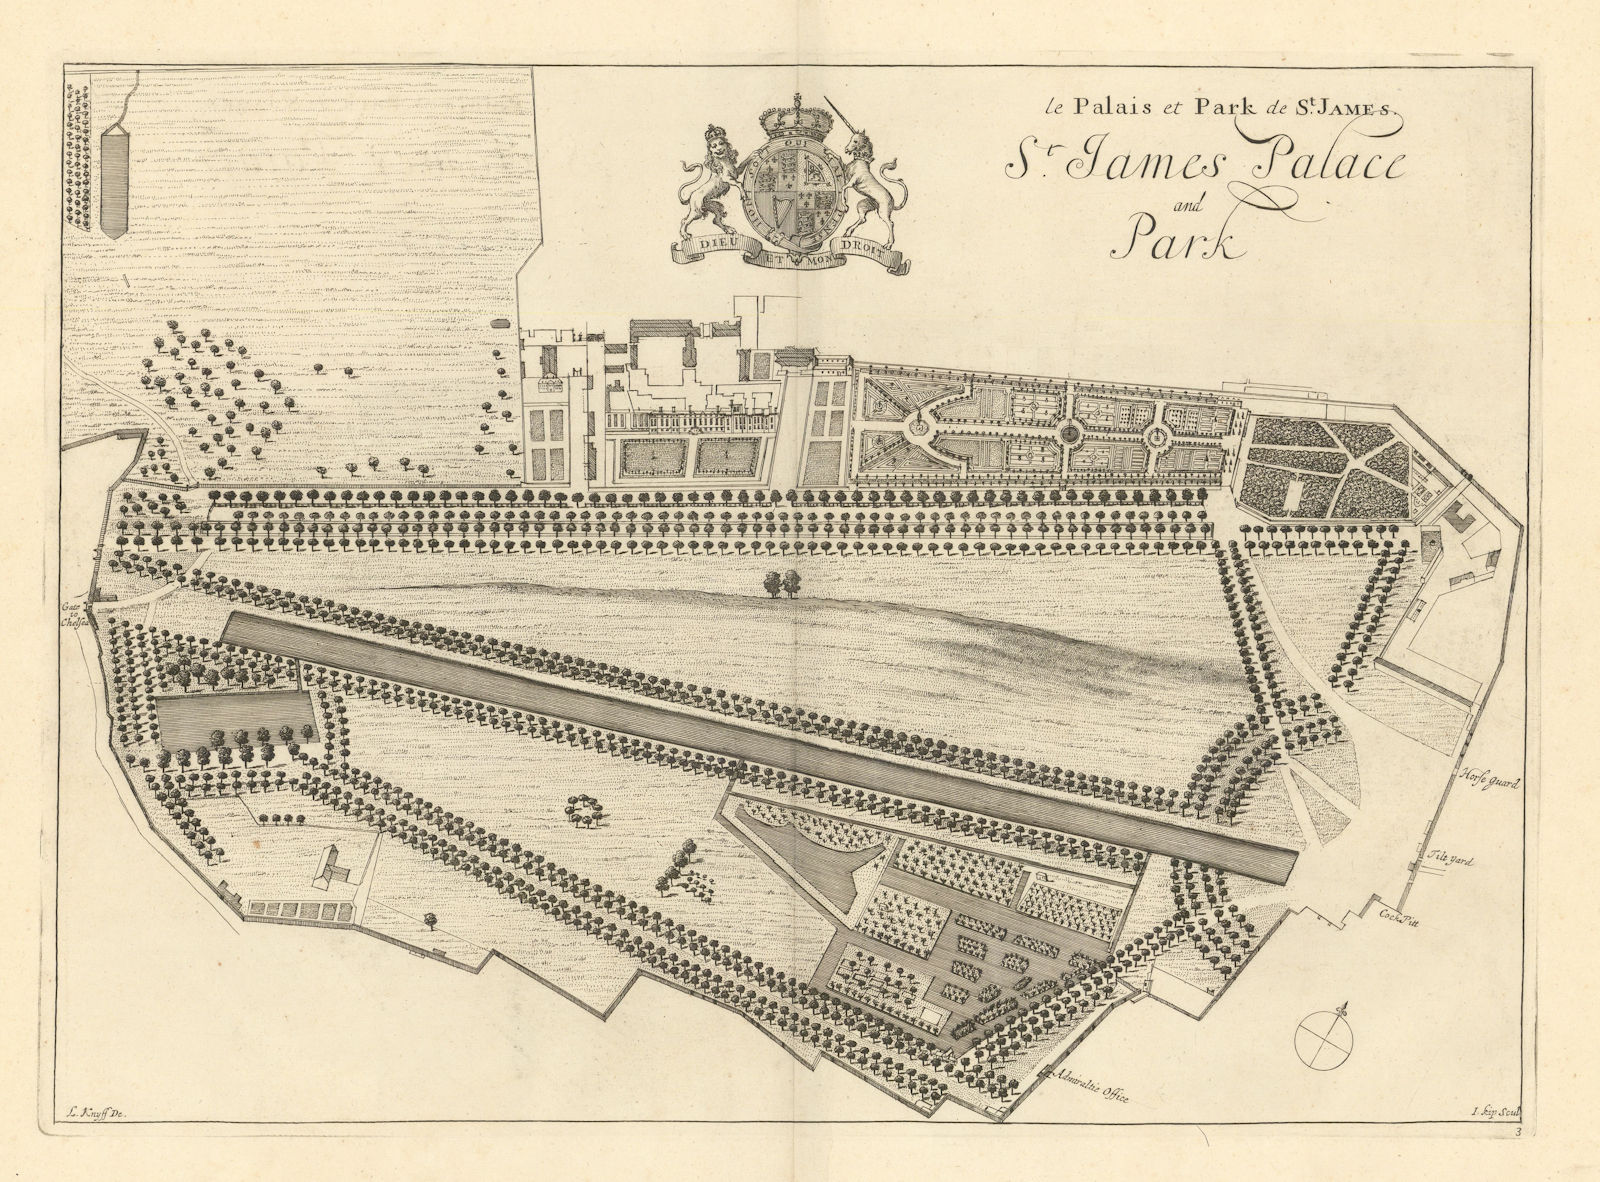 St. James Palace and Park by Kip & Knyff. Le palais… de St James. London 1709